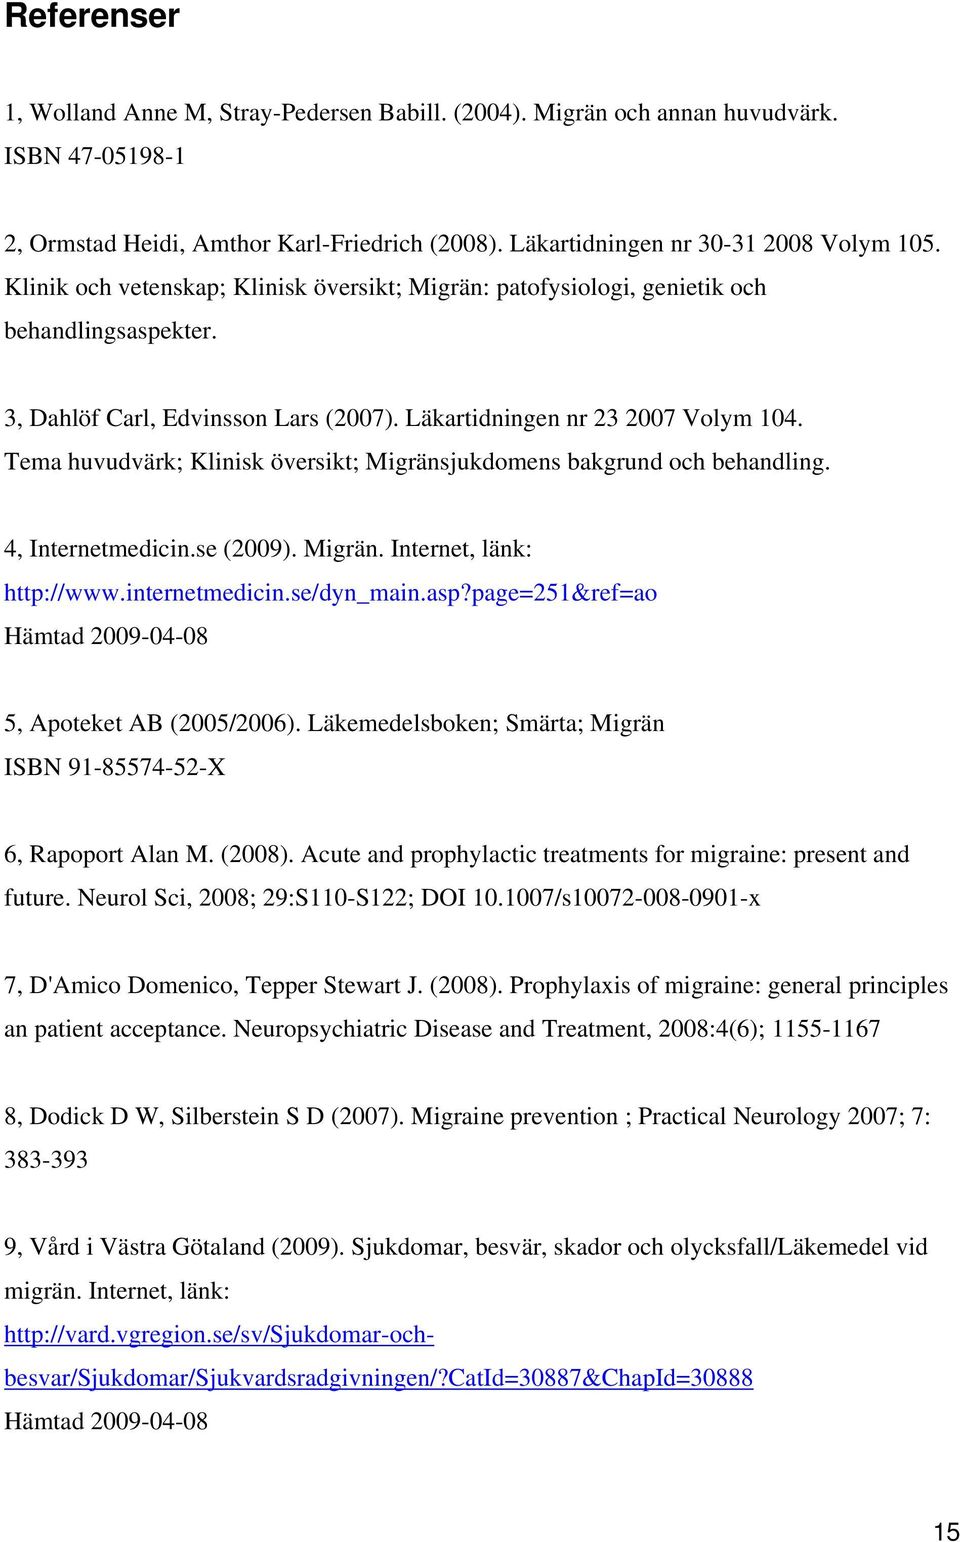 Tema huvudvärk; Klinisk översikt; Migränsjukdomens bakgrund och behandling. 4, Internetmedicin.se (2009). Migrän. Internet, länk: http://www.internetmedicin.se/dyn_main.asp?